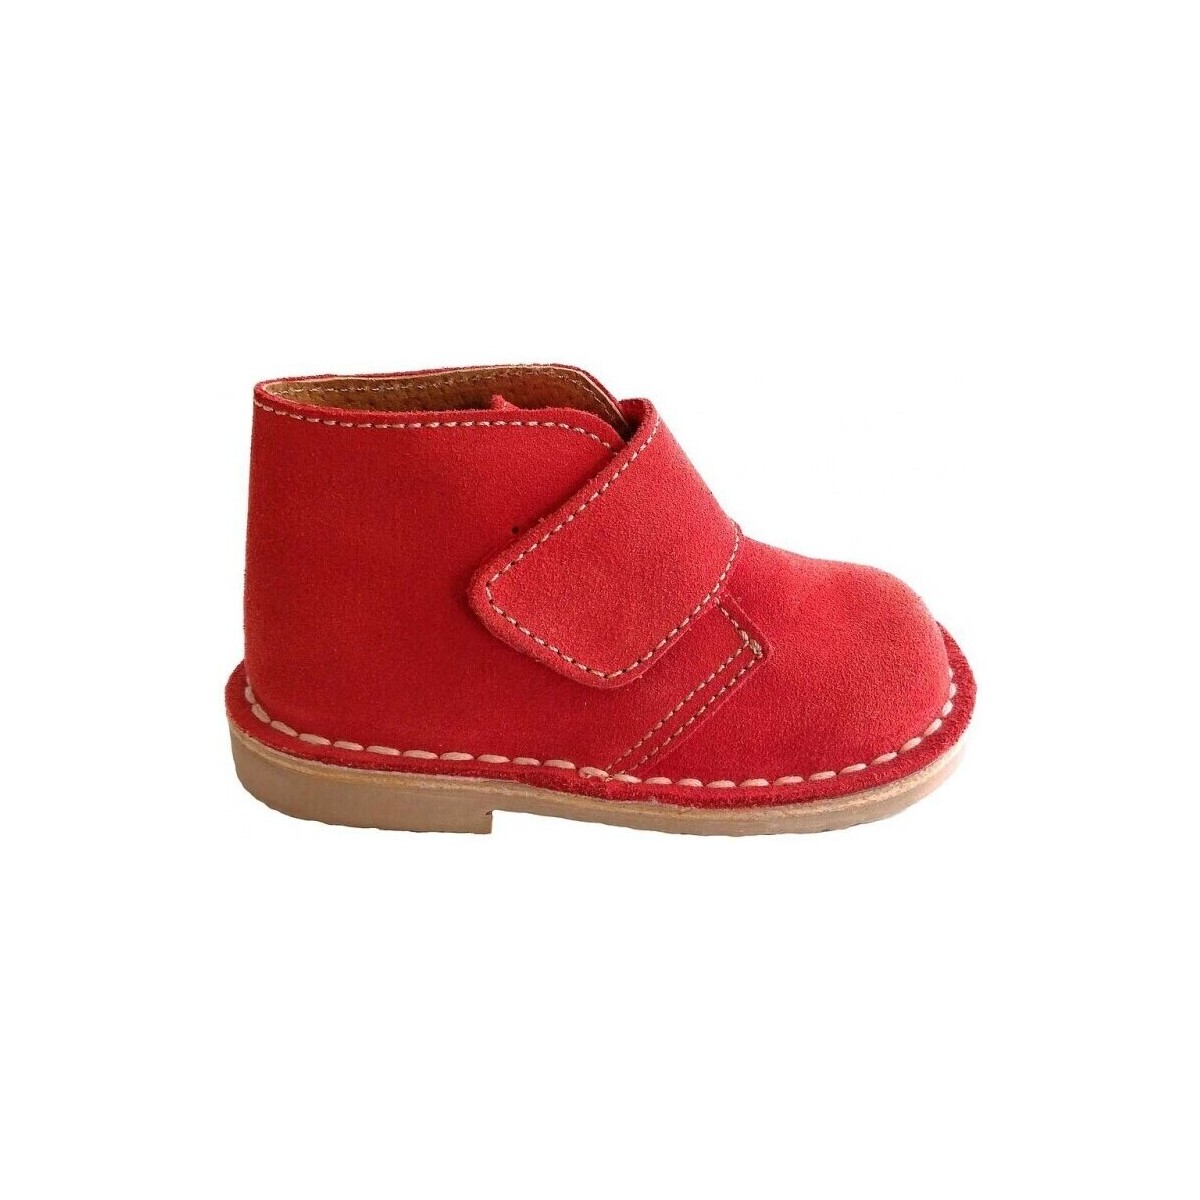 Παπούτσια Μπότες Colores 15150-18 Red